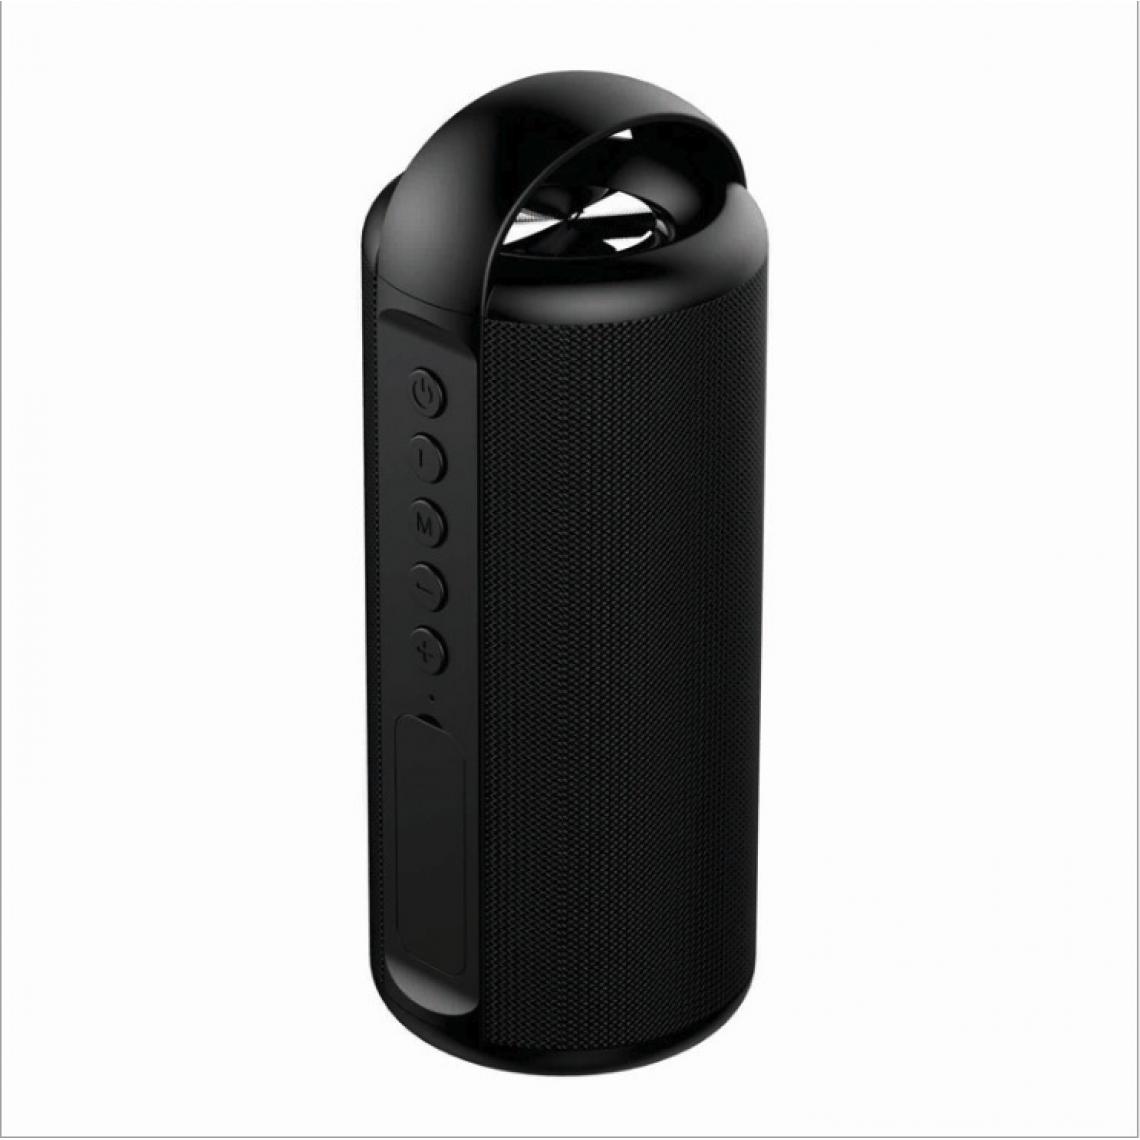 Universal - Haut-parleurs portables Bluetooth sans fil basse mini colonne 3D stéréo système acoustique subwoofer Music Center | haut-parleurs portables (noir) - Hauts-parleurs